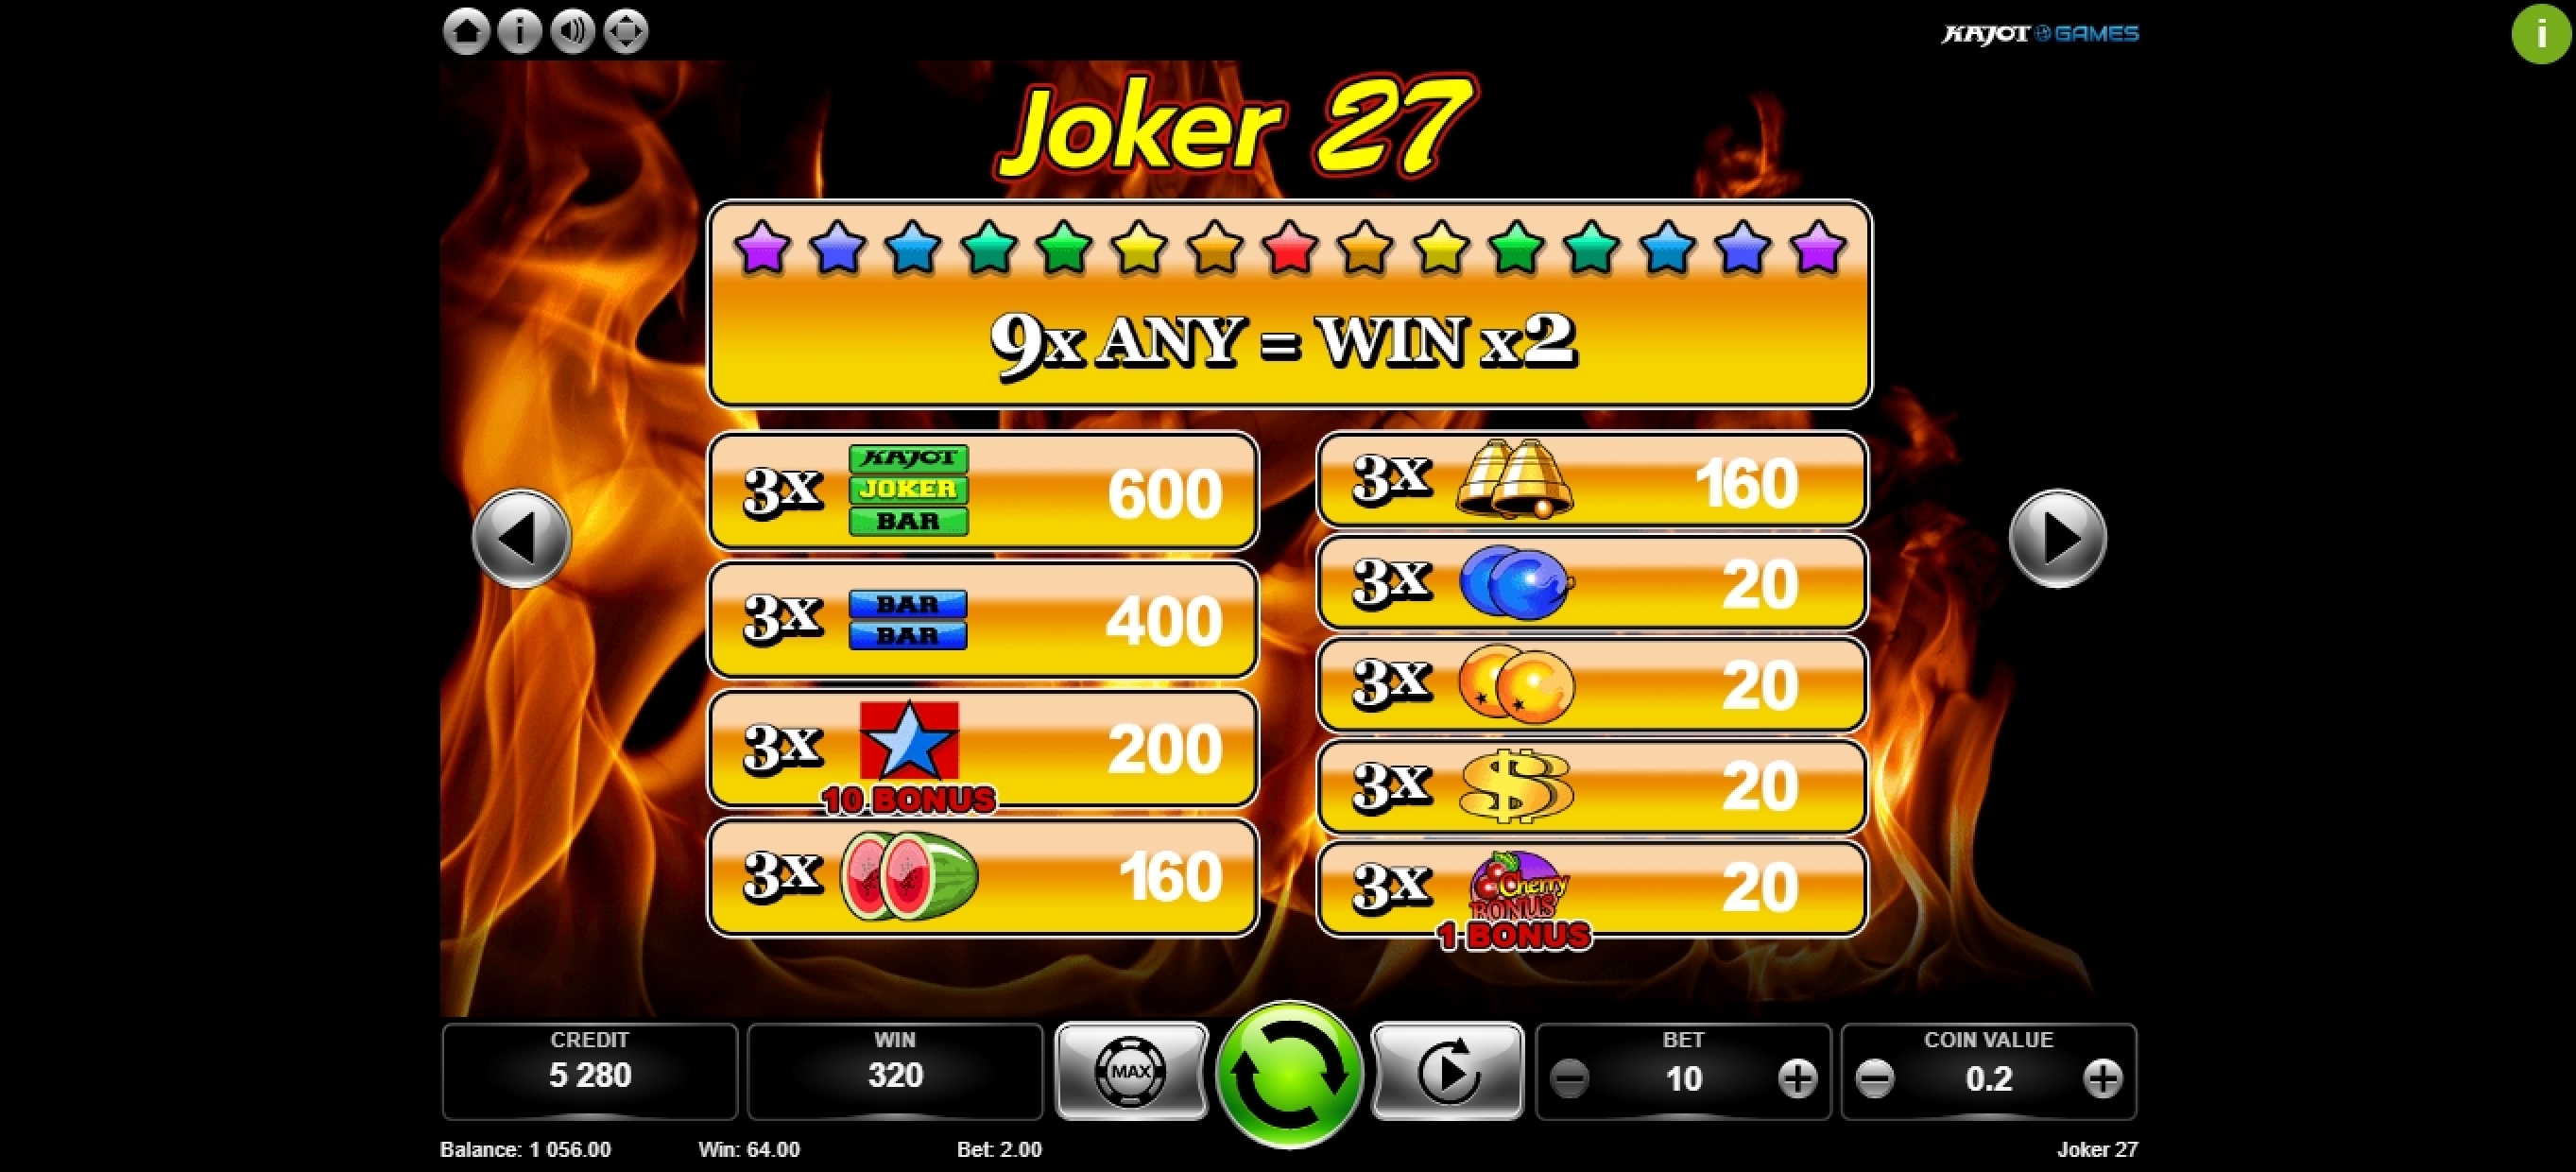 Info of Joker 27 Slot Game by Kajot